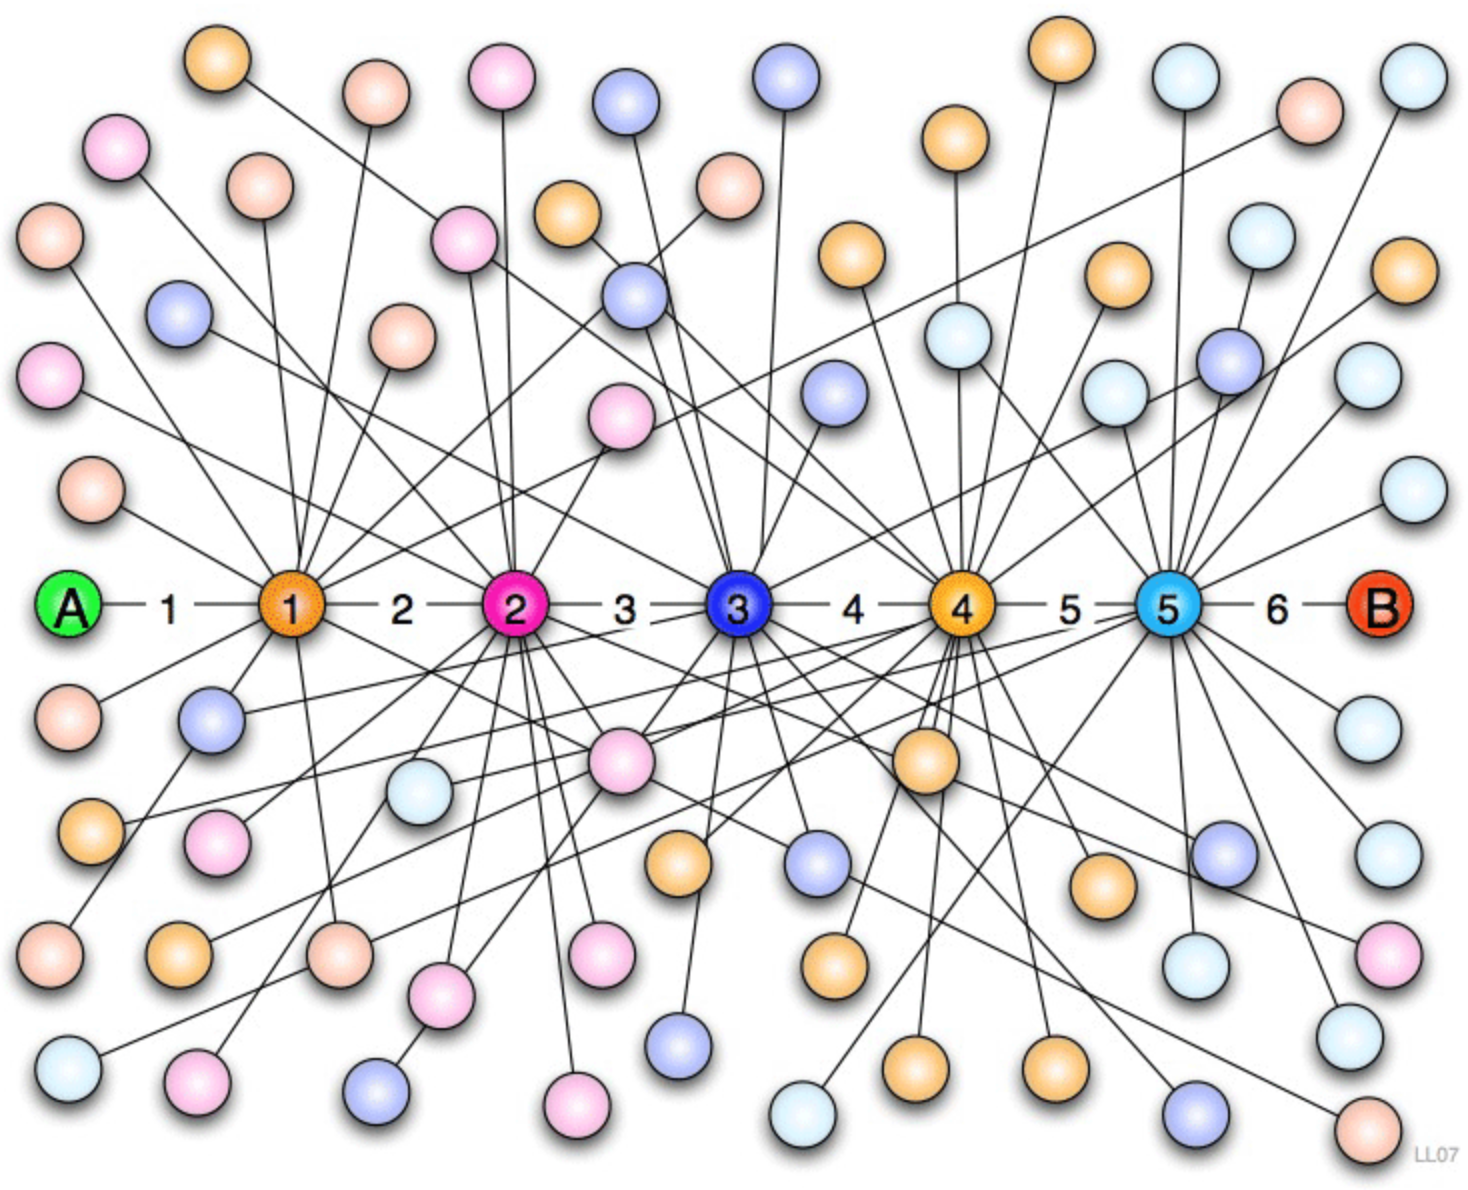 Relevante sociale netwerk theorieën Nicholas Christakis: Onze ervaring met de wereld hangt af van deze feitelijke structuur van de netwerken waar we deel van uitmaken en van al wat beweegt door dit